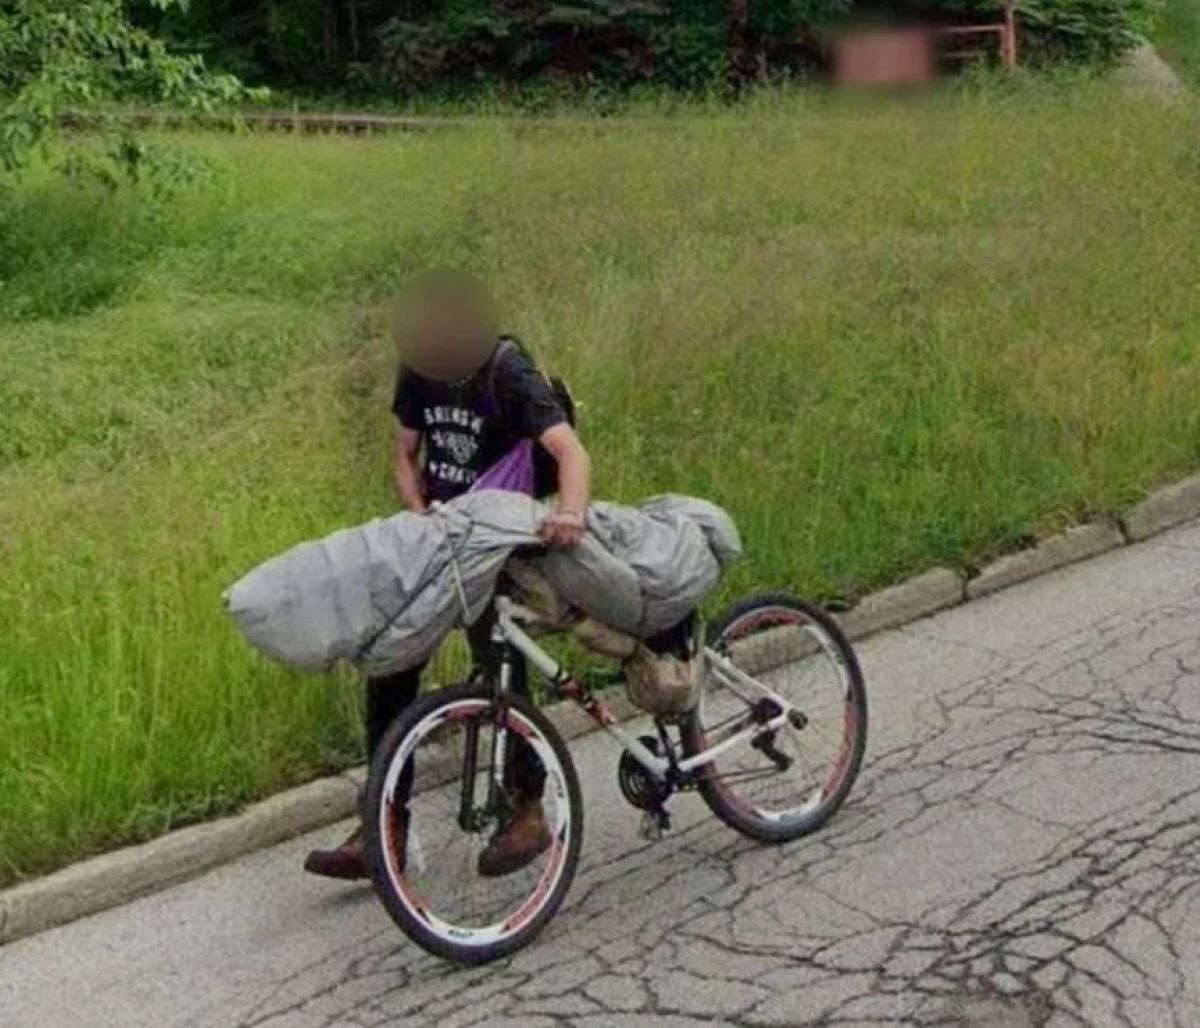  homem-cadaver-bicicleta 